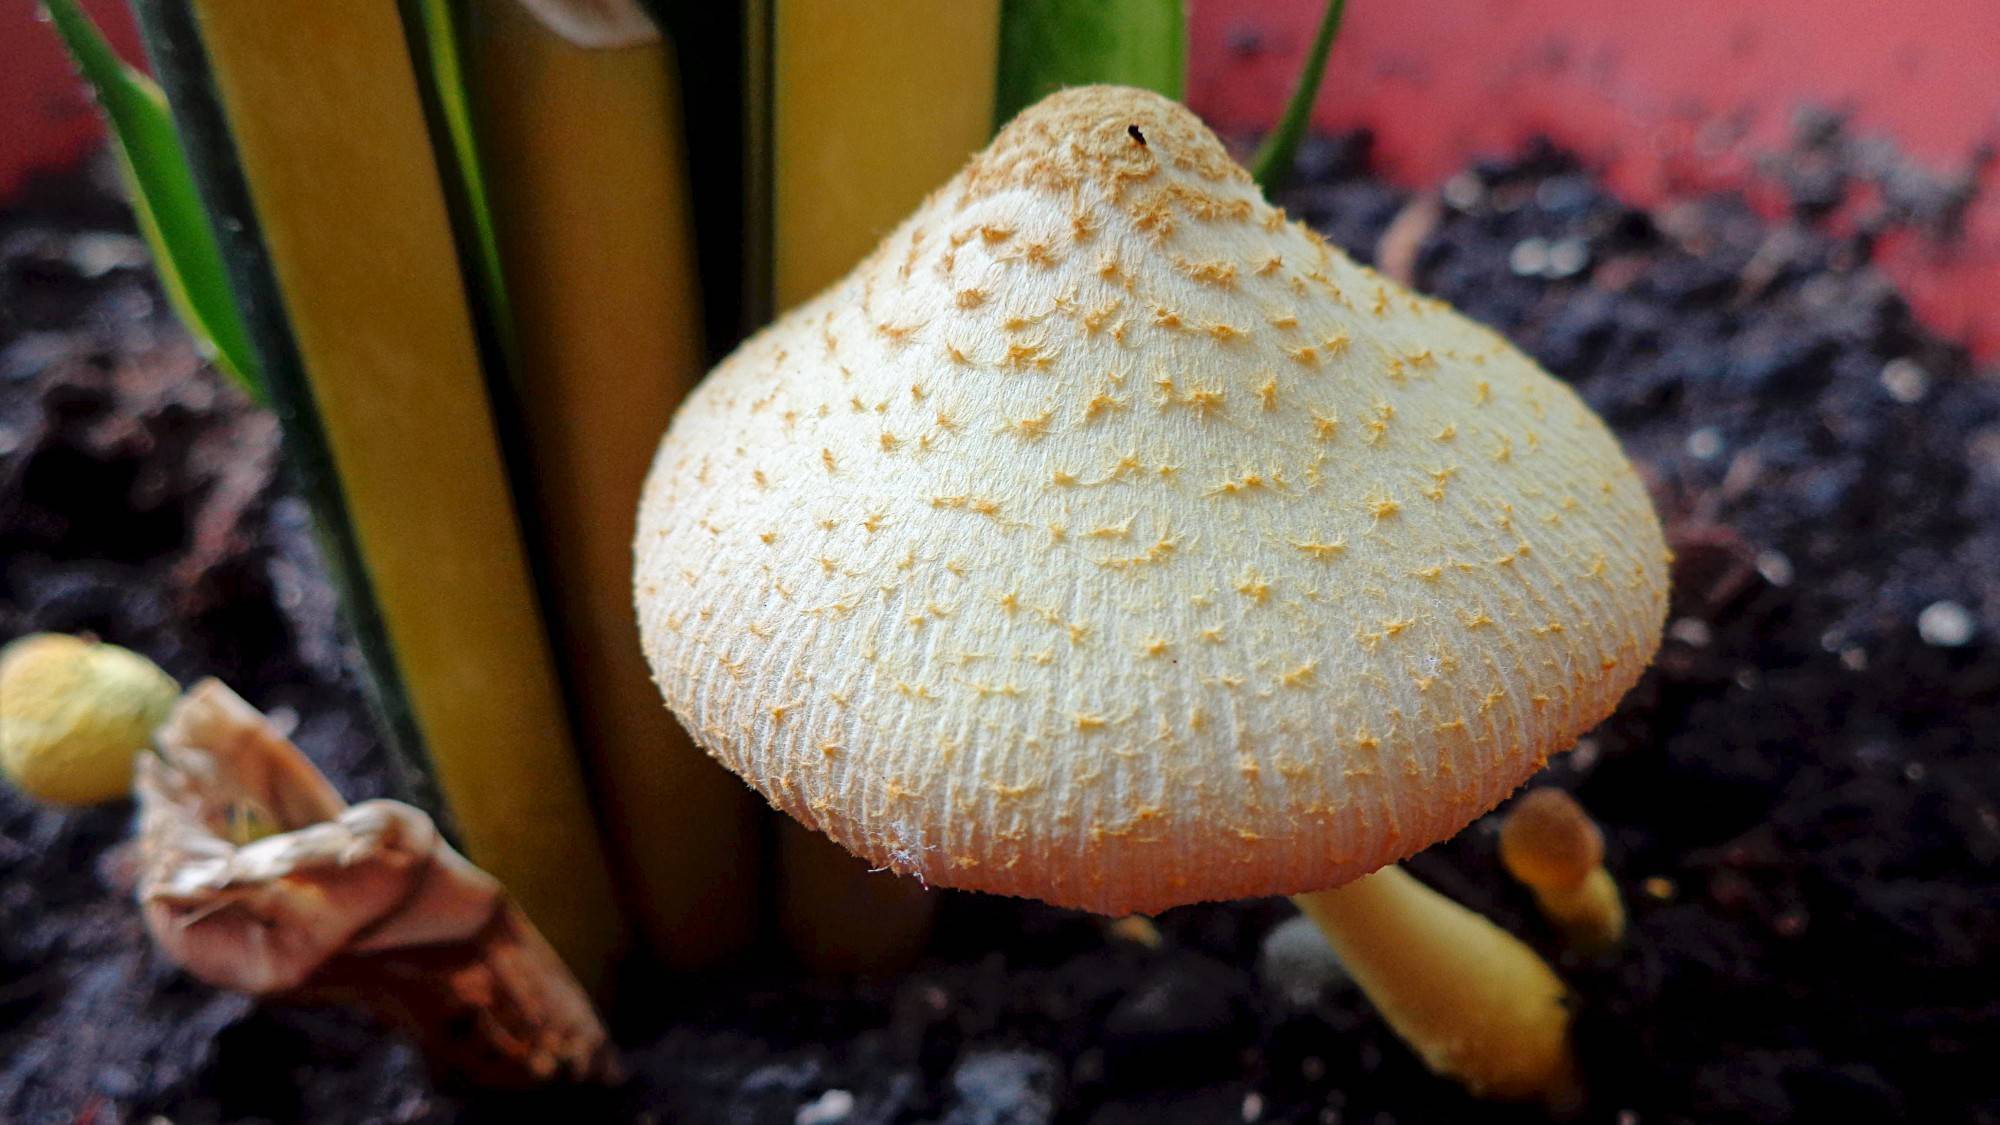 Белонавозник пилата: фото и описание гриба, съедобный или нет